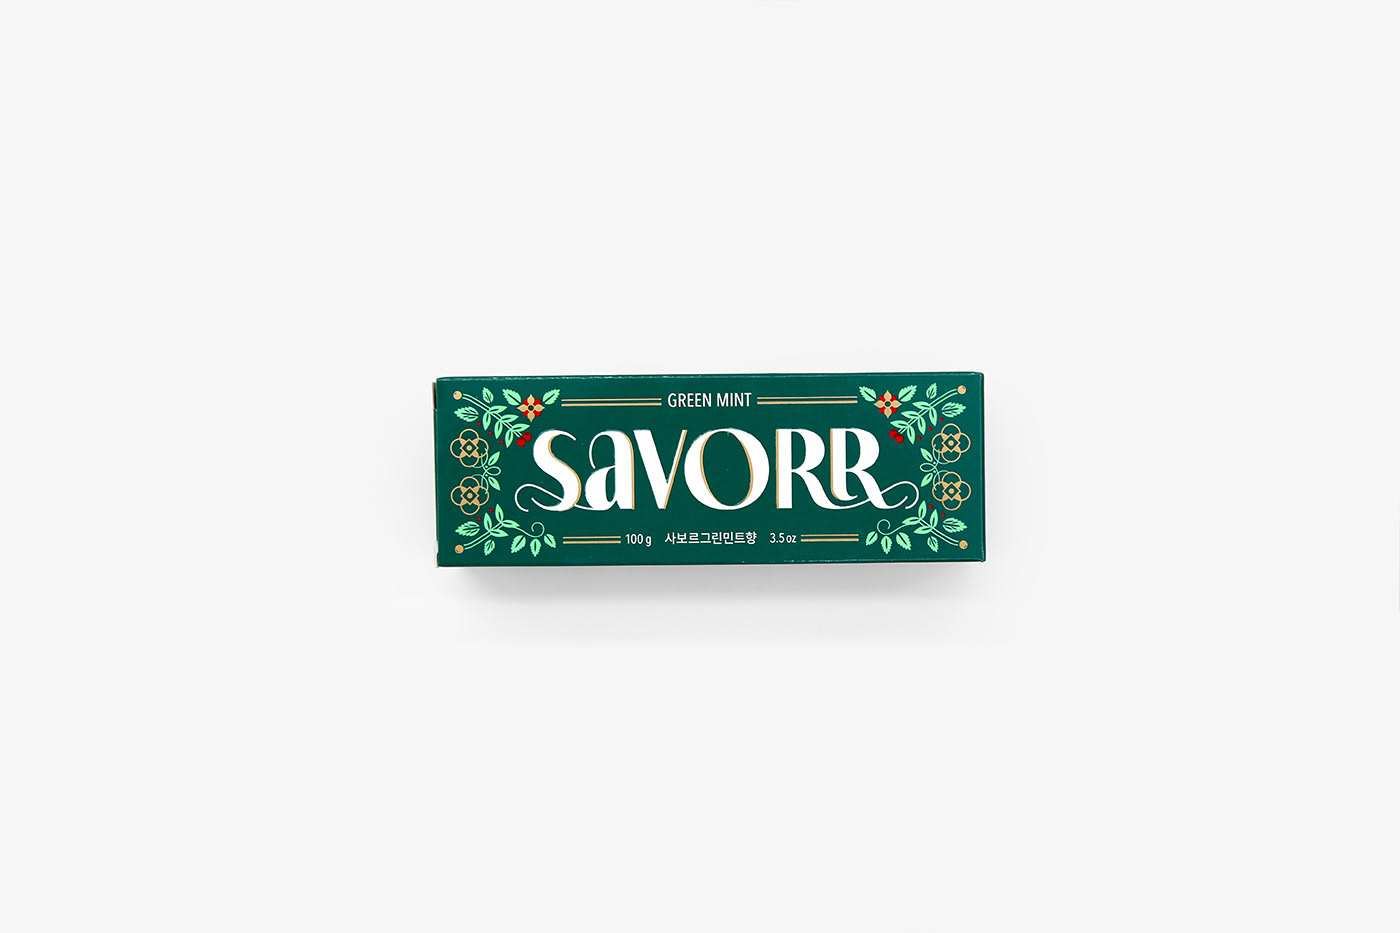 SAVORR牙膏包装设计